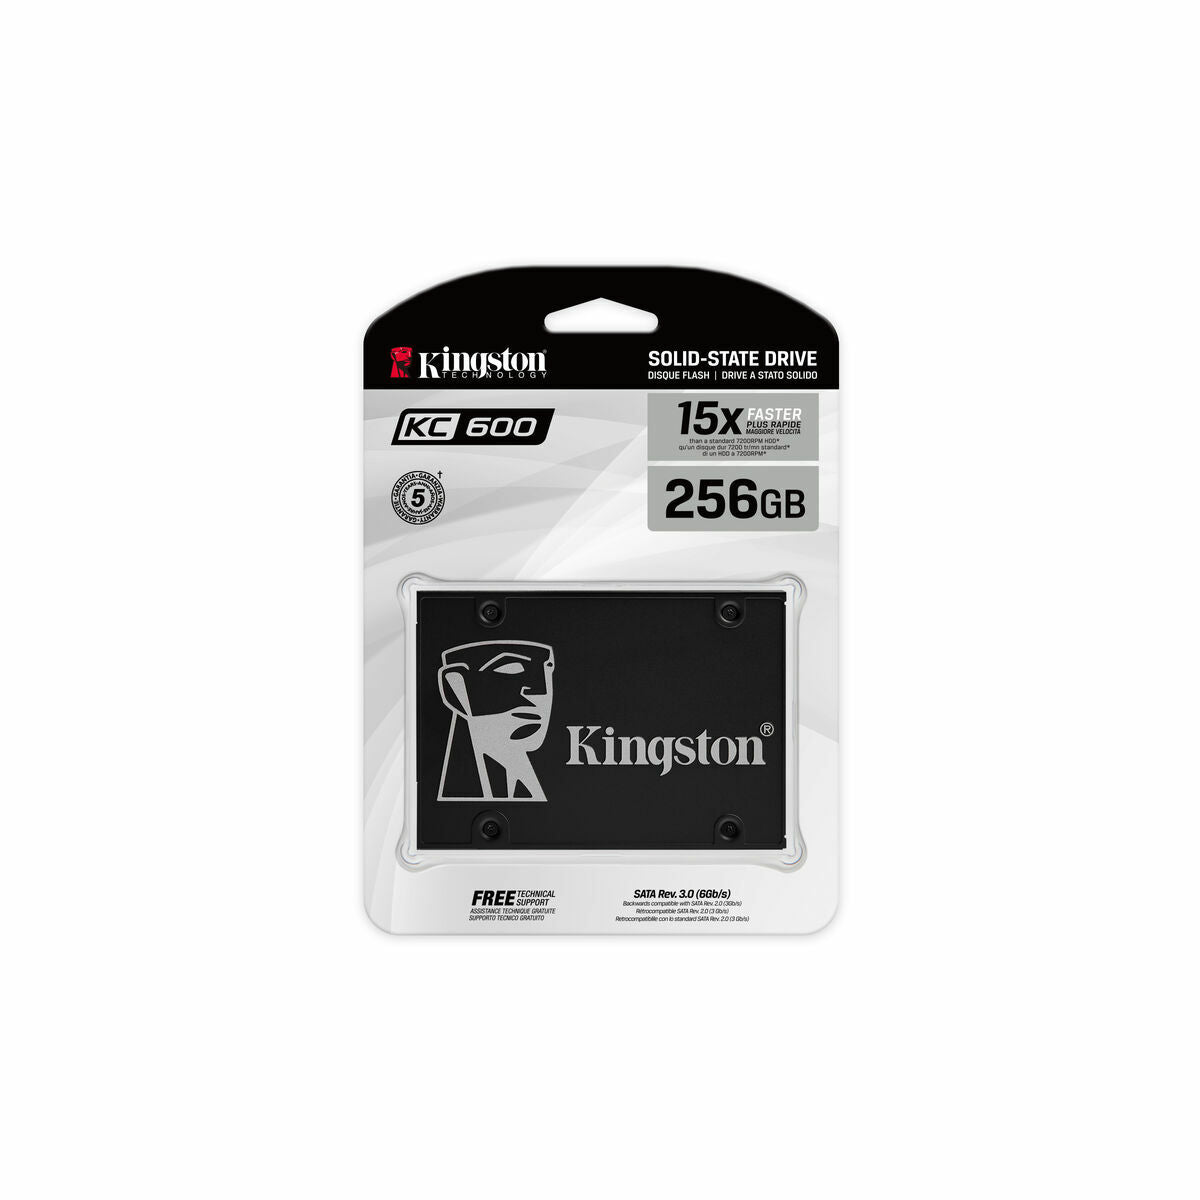 Hard Drive Kingston SKC600/256G Internal SSD 256 GB SSD